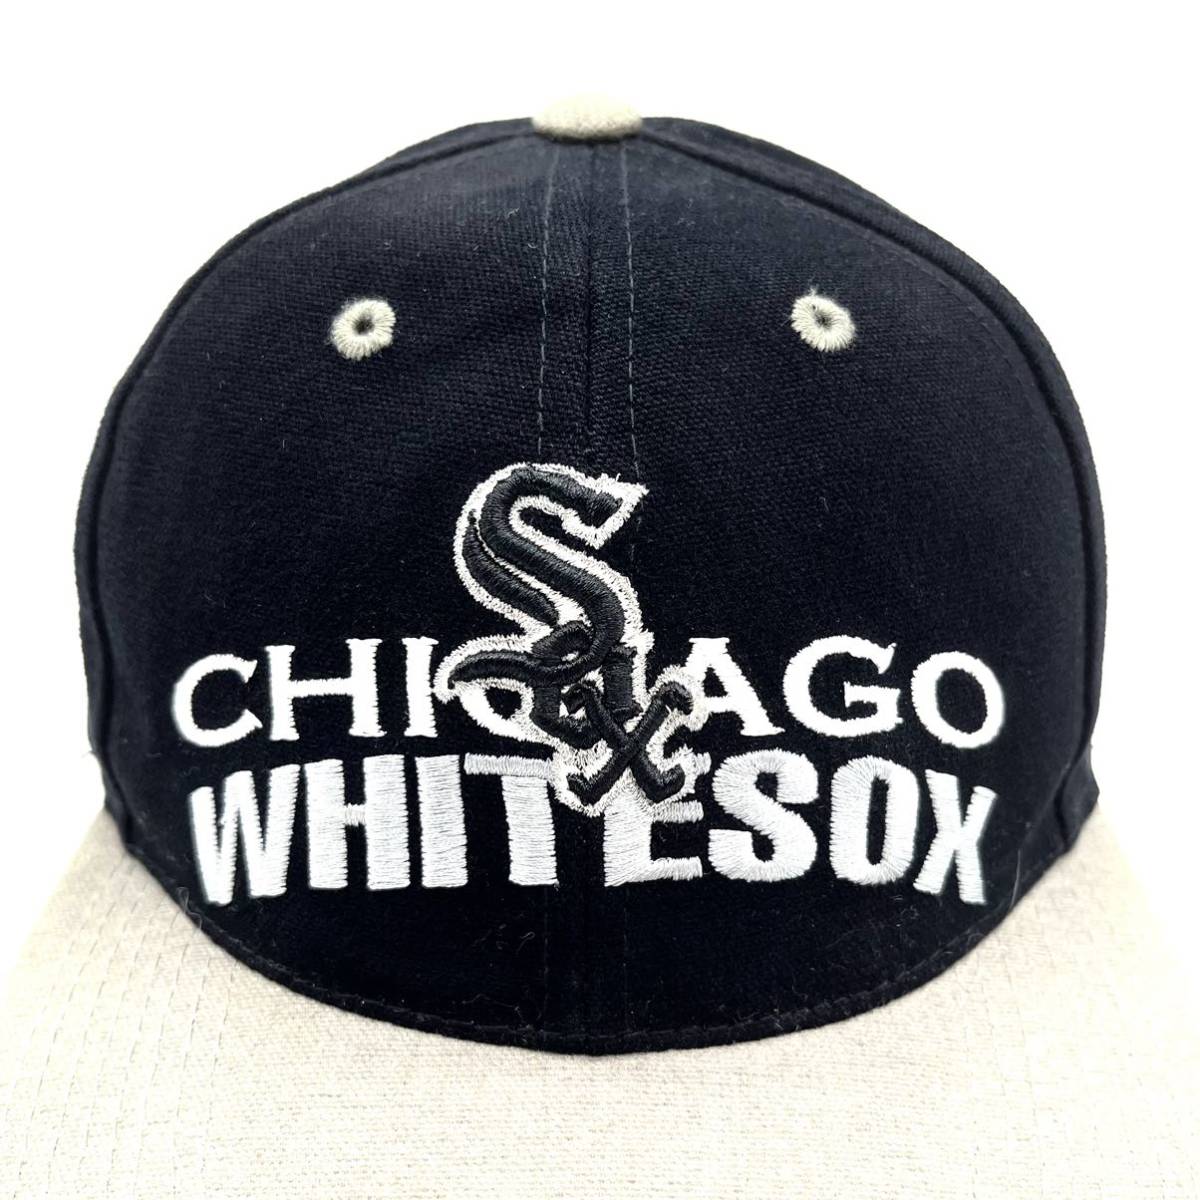 【ヴィンテージ】90s MLB シカゴ・ホワイトソックス チーム刺繍ロゴ BBキャップ ブラック×グレー 6パネル ストラップバック 2トーン 帽子_画像6